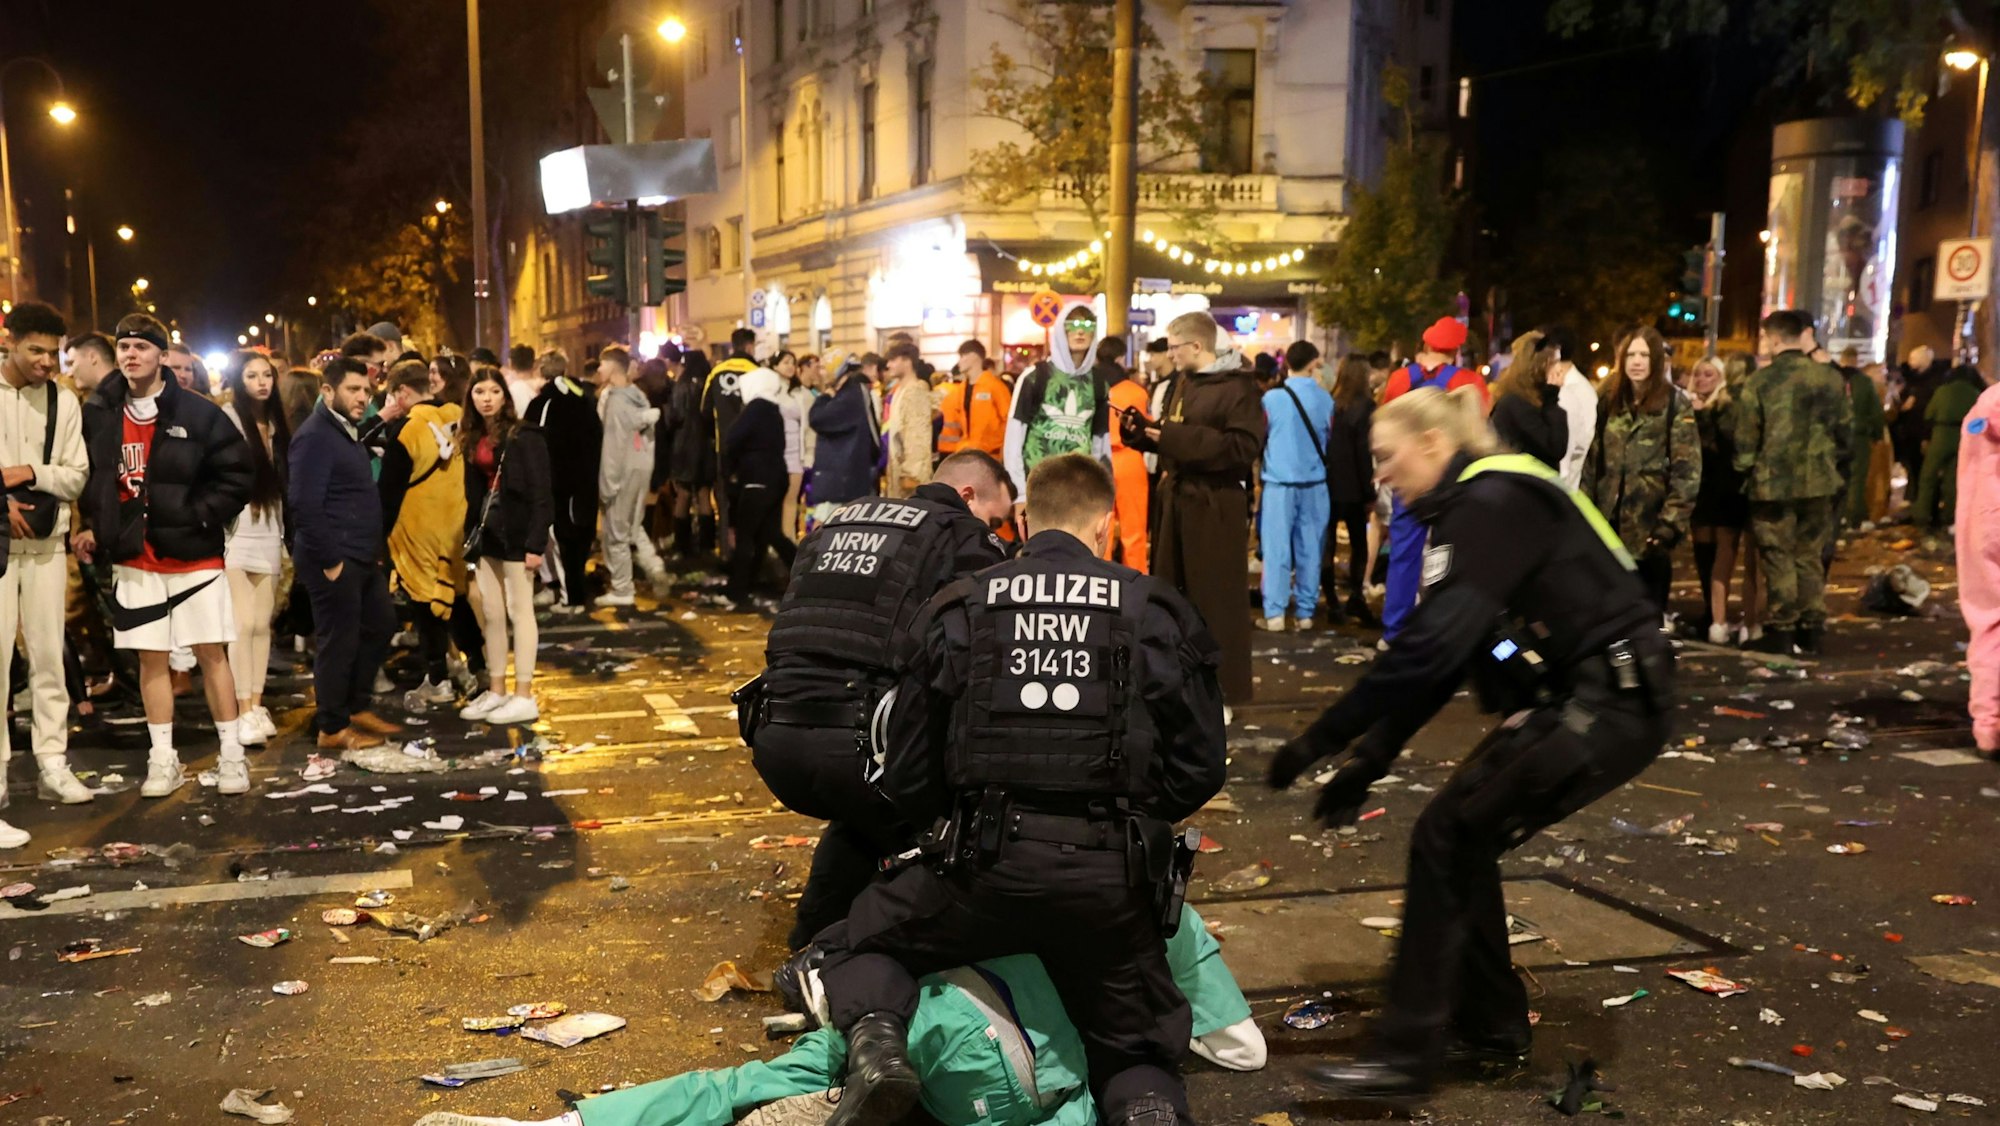 Polizisten beugen sich über einen Karnevalisten in grünem Kostüm. Rundherum stehen Menschentrauben.